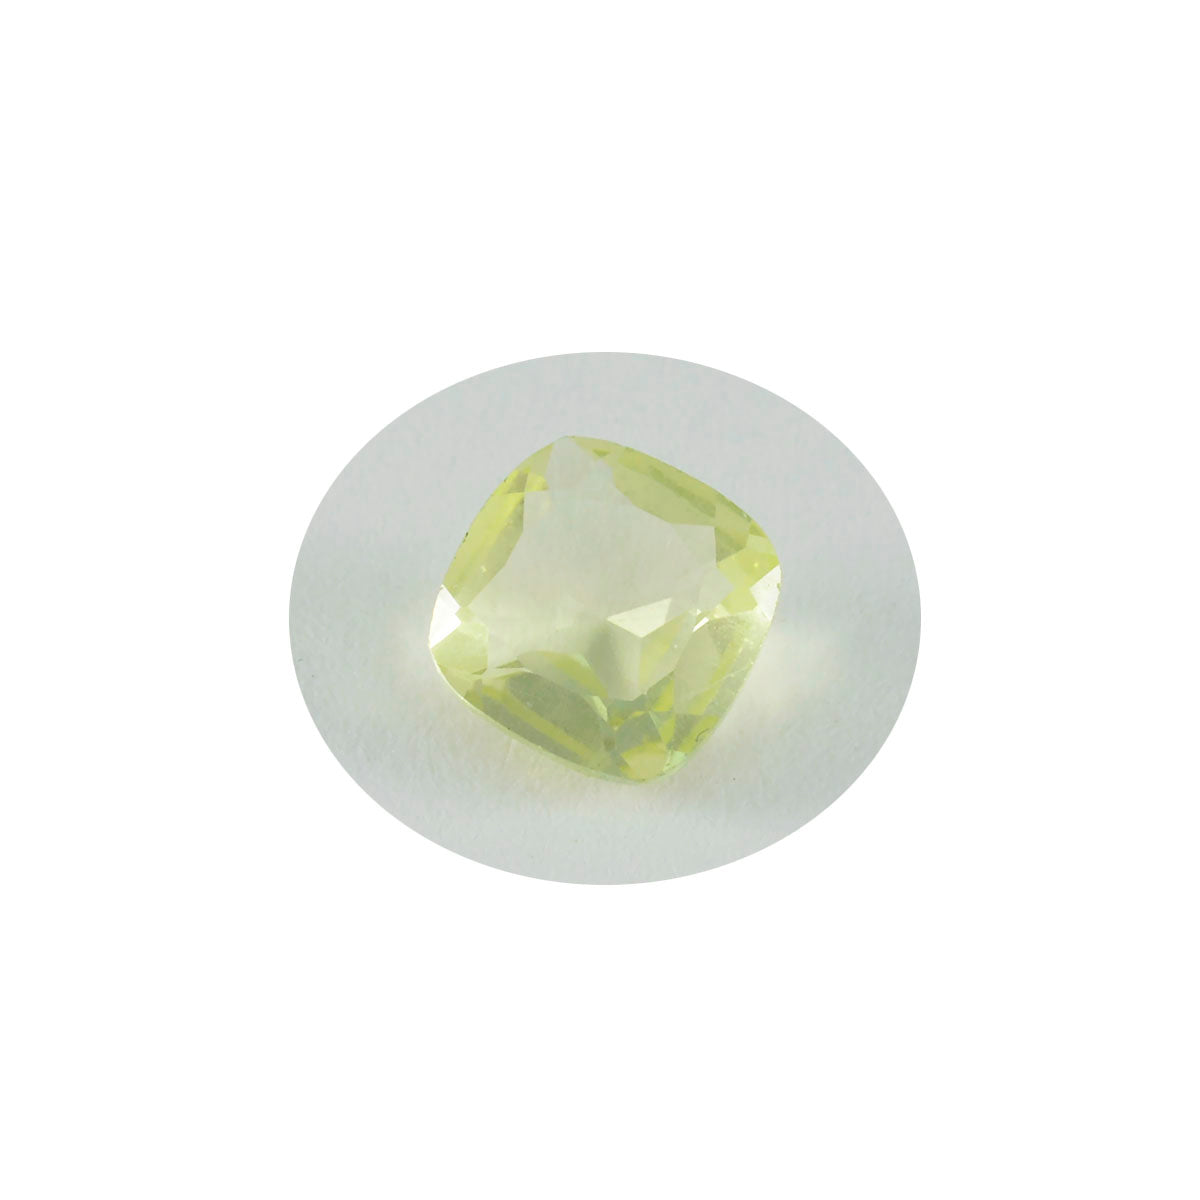 riyogems 1шт желтый лимонный кварц ограненный 10х10 мм в форме подушки качественный драгоценный камень